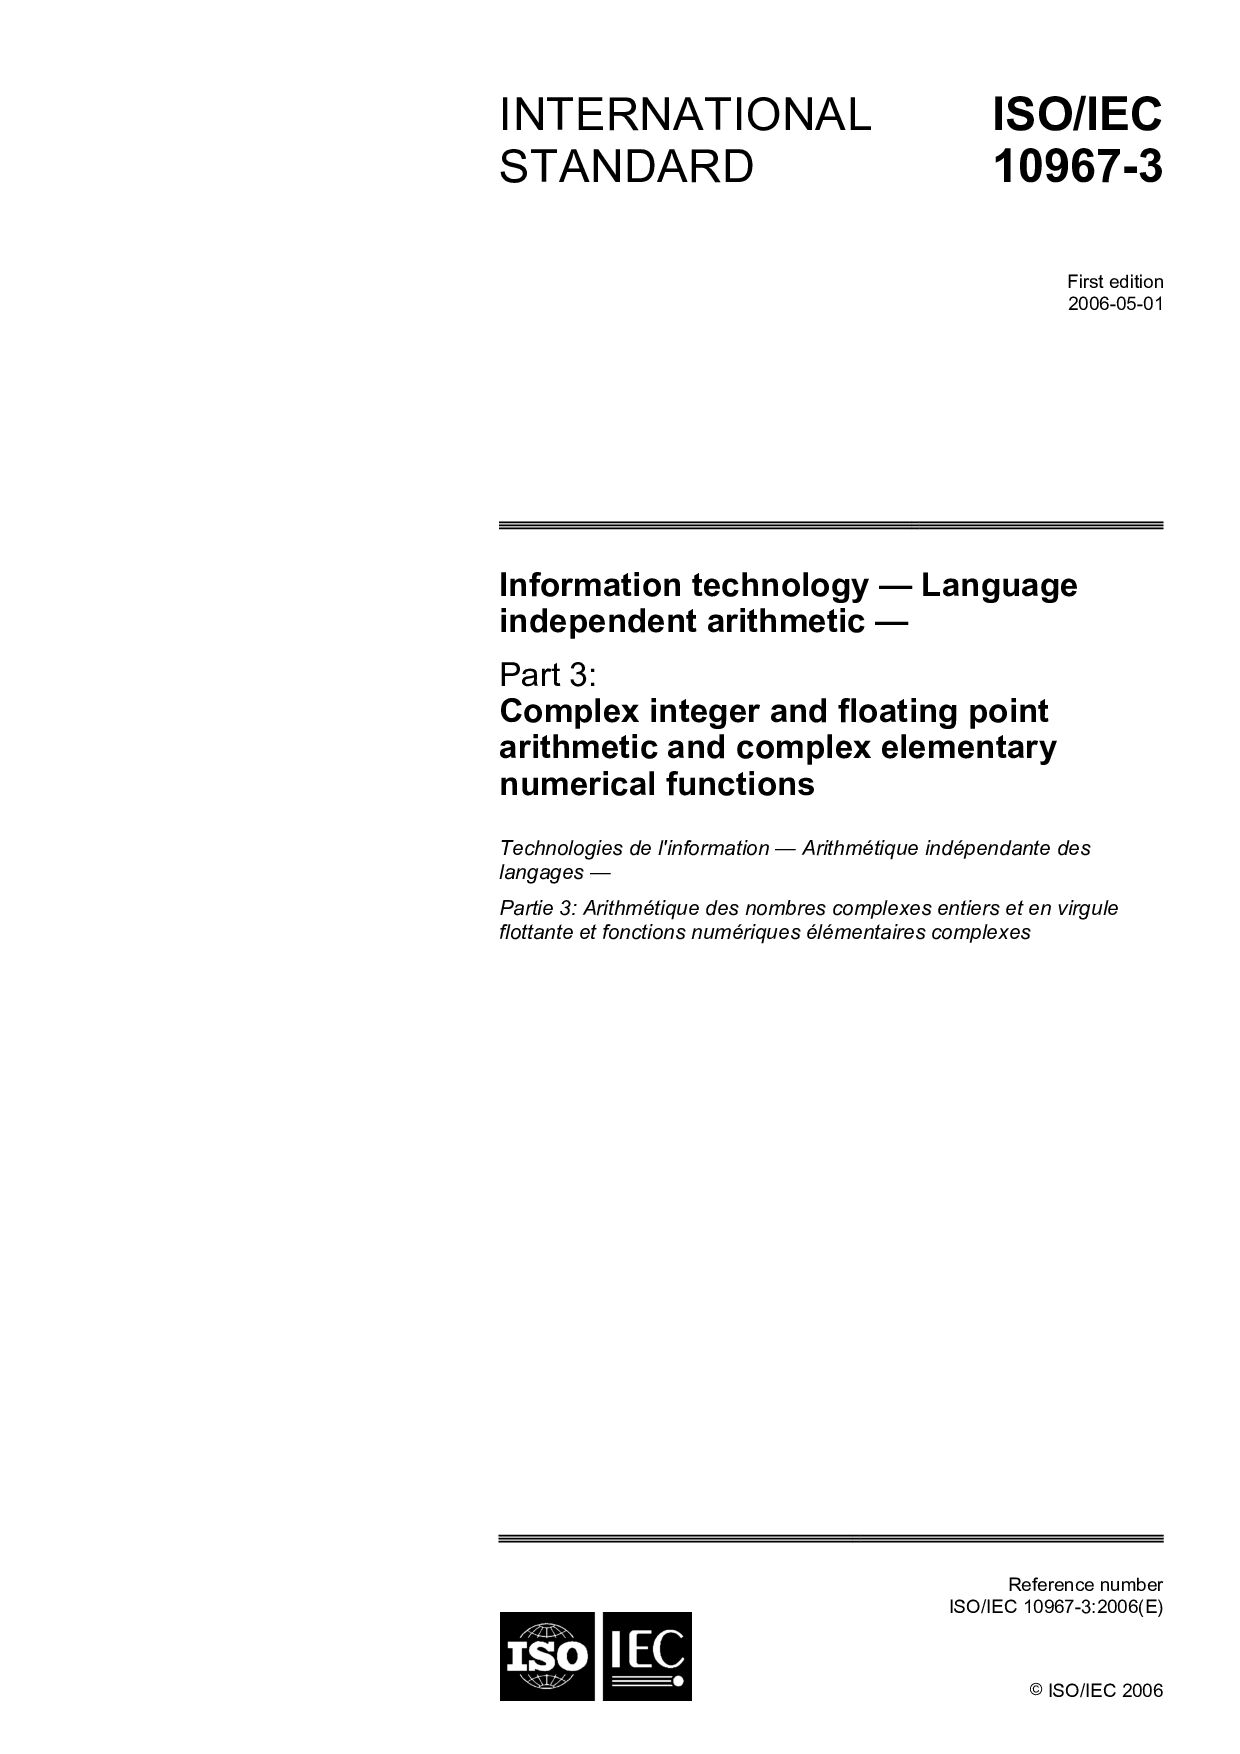 ISO/IEC 10967-3:2006封面图